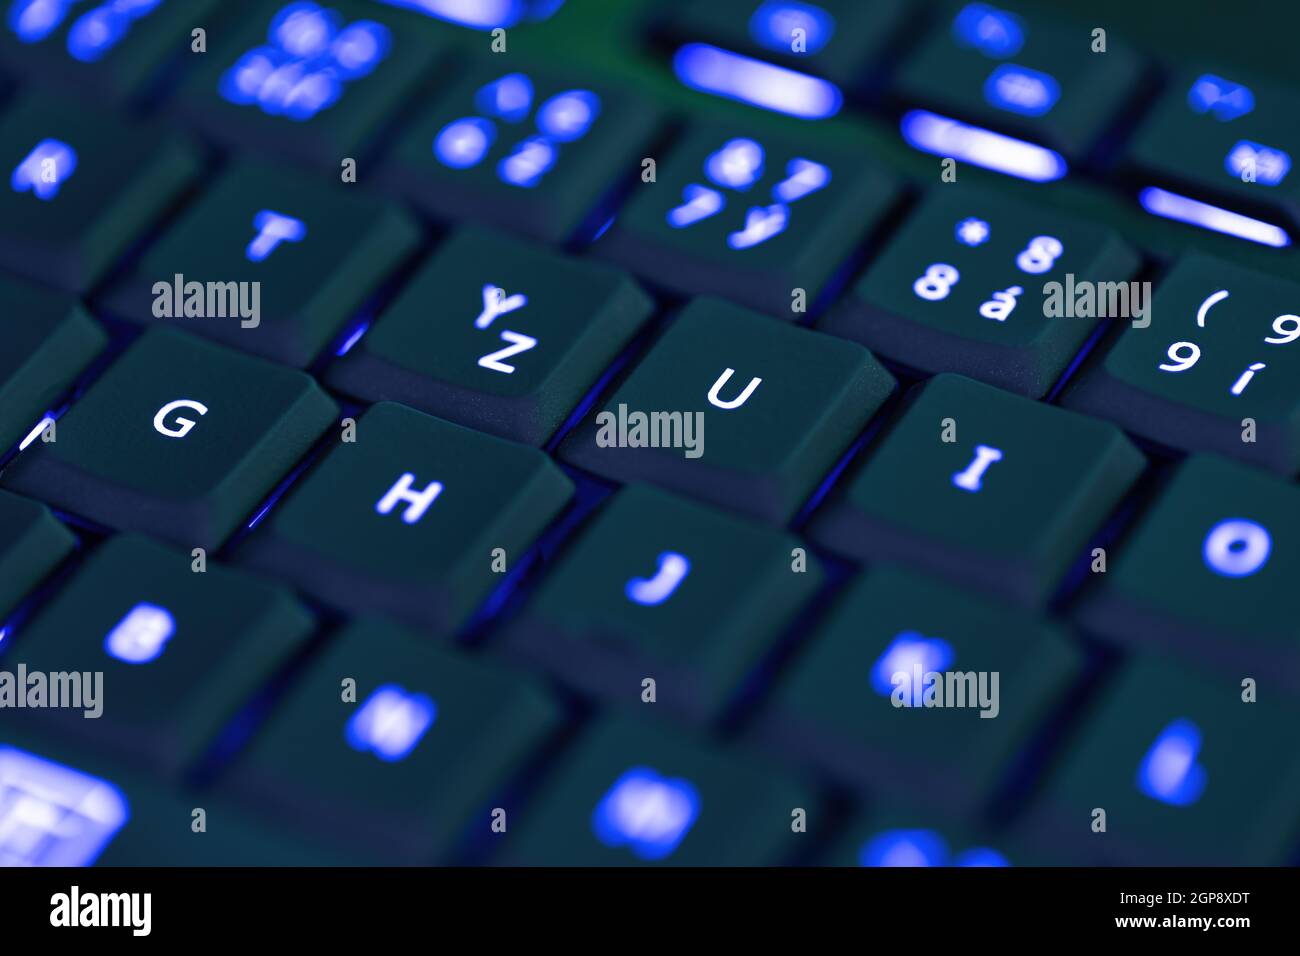 Nahaufnahme der Tastaturbeleuchtung für Laptop oder Desktop-Computer,  Tastatur mit blauer Hintergrundbeleuchtung Stockfotografie - Alamy